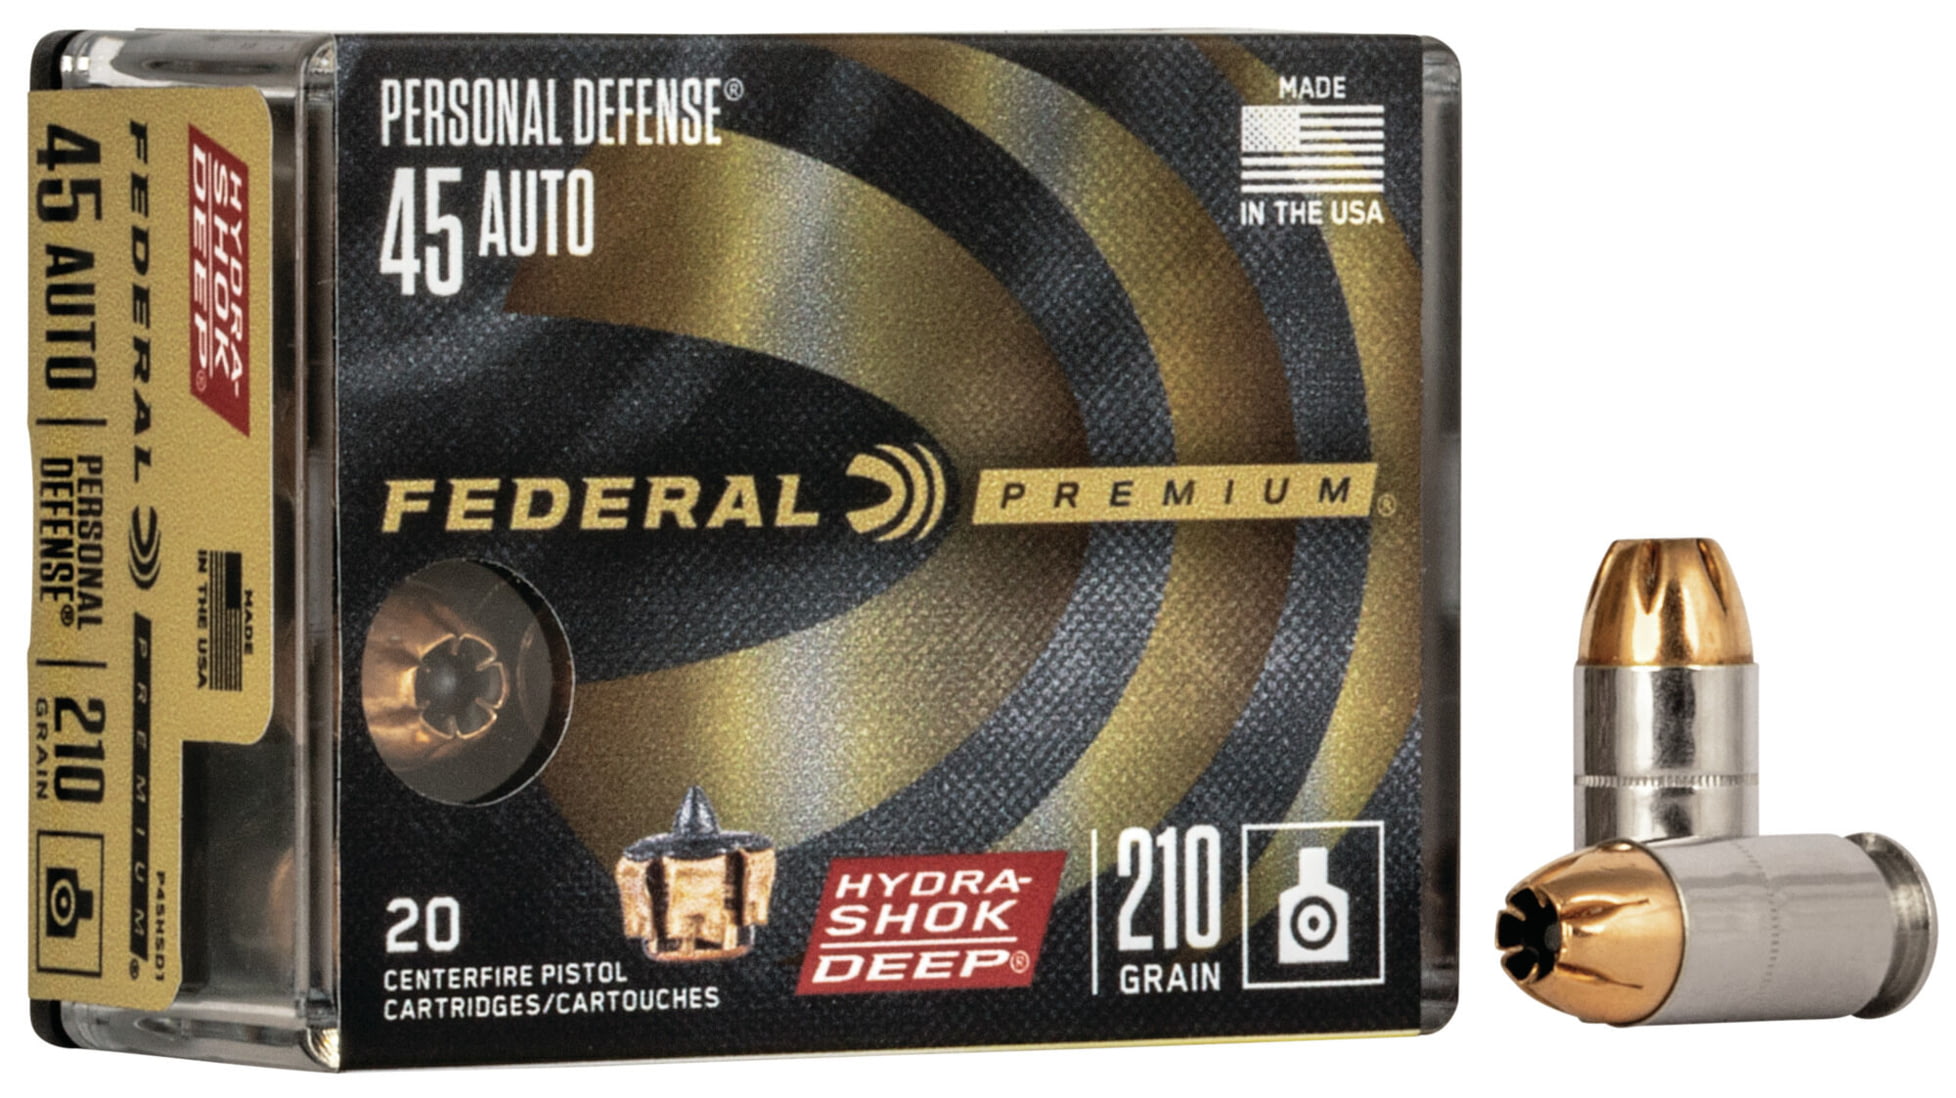 Federal Premium Centerfire Handgun Ammunition .45 ACP 210 grain Hydra-Shok Deep Jacketed Hollow point Centerfire Pistol Ammunition